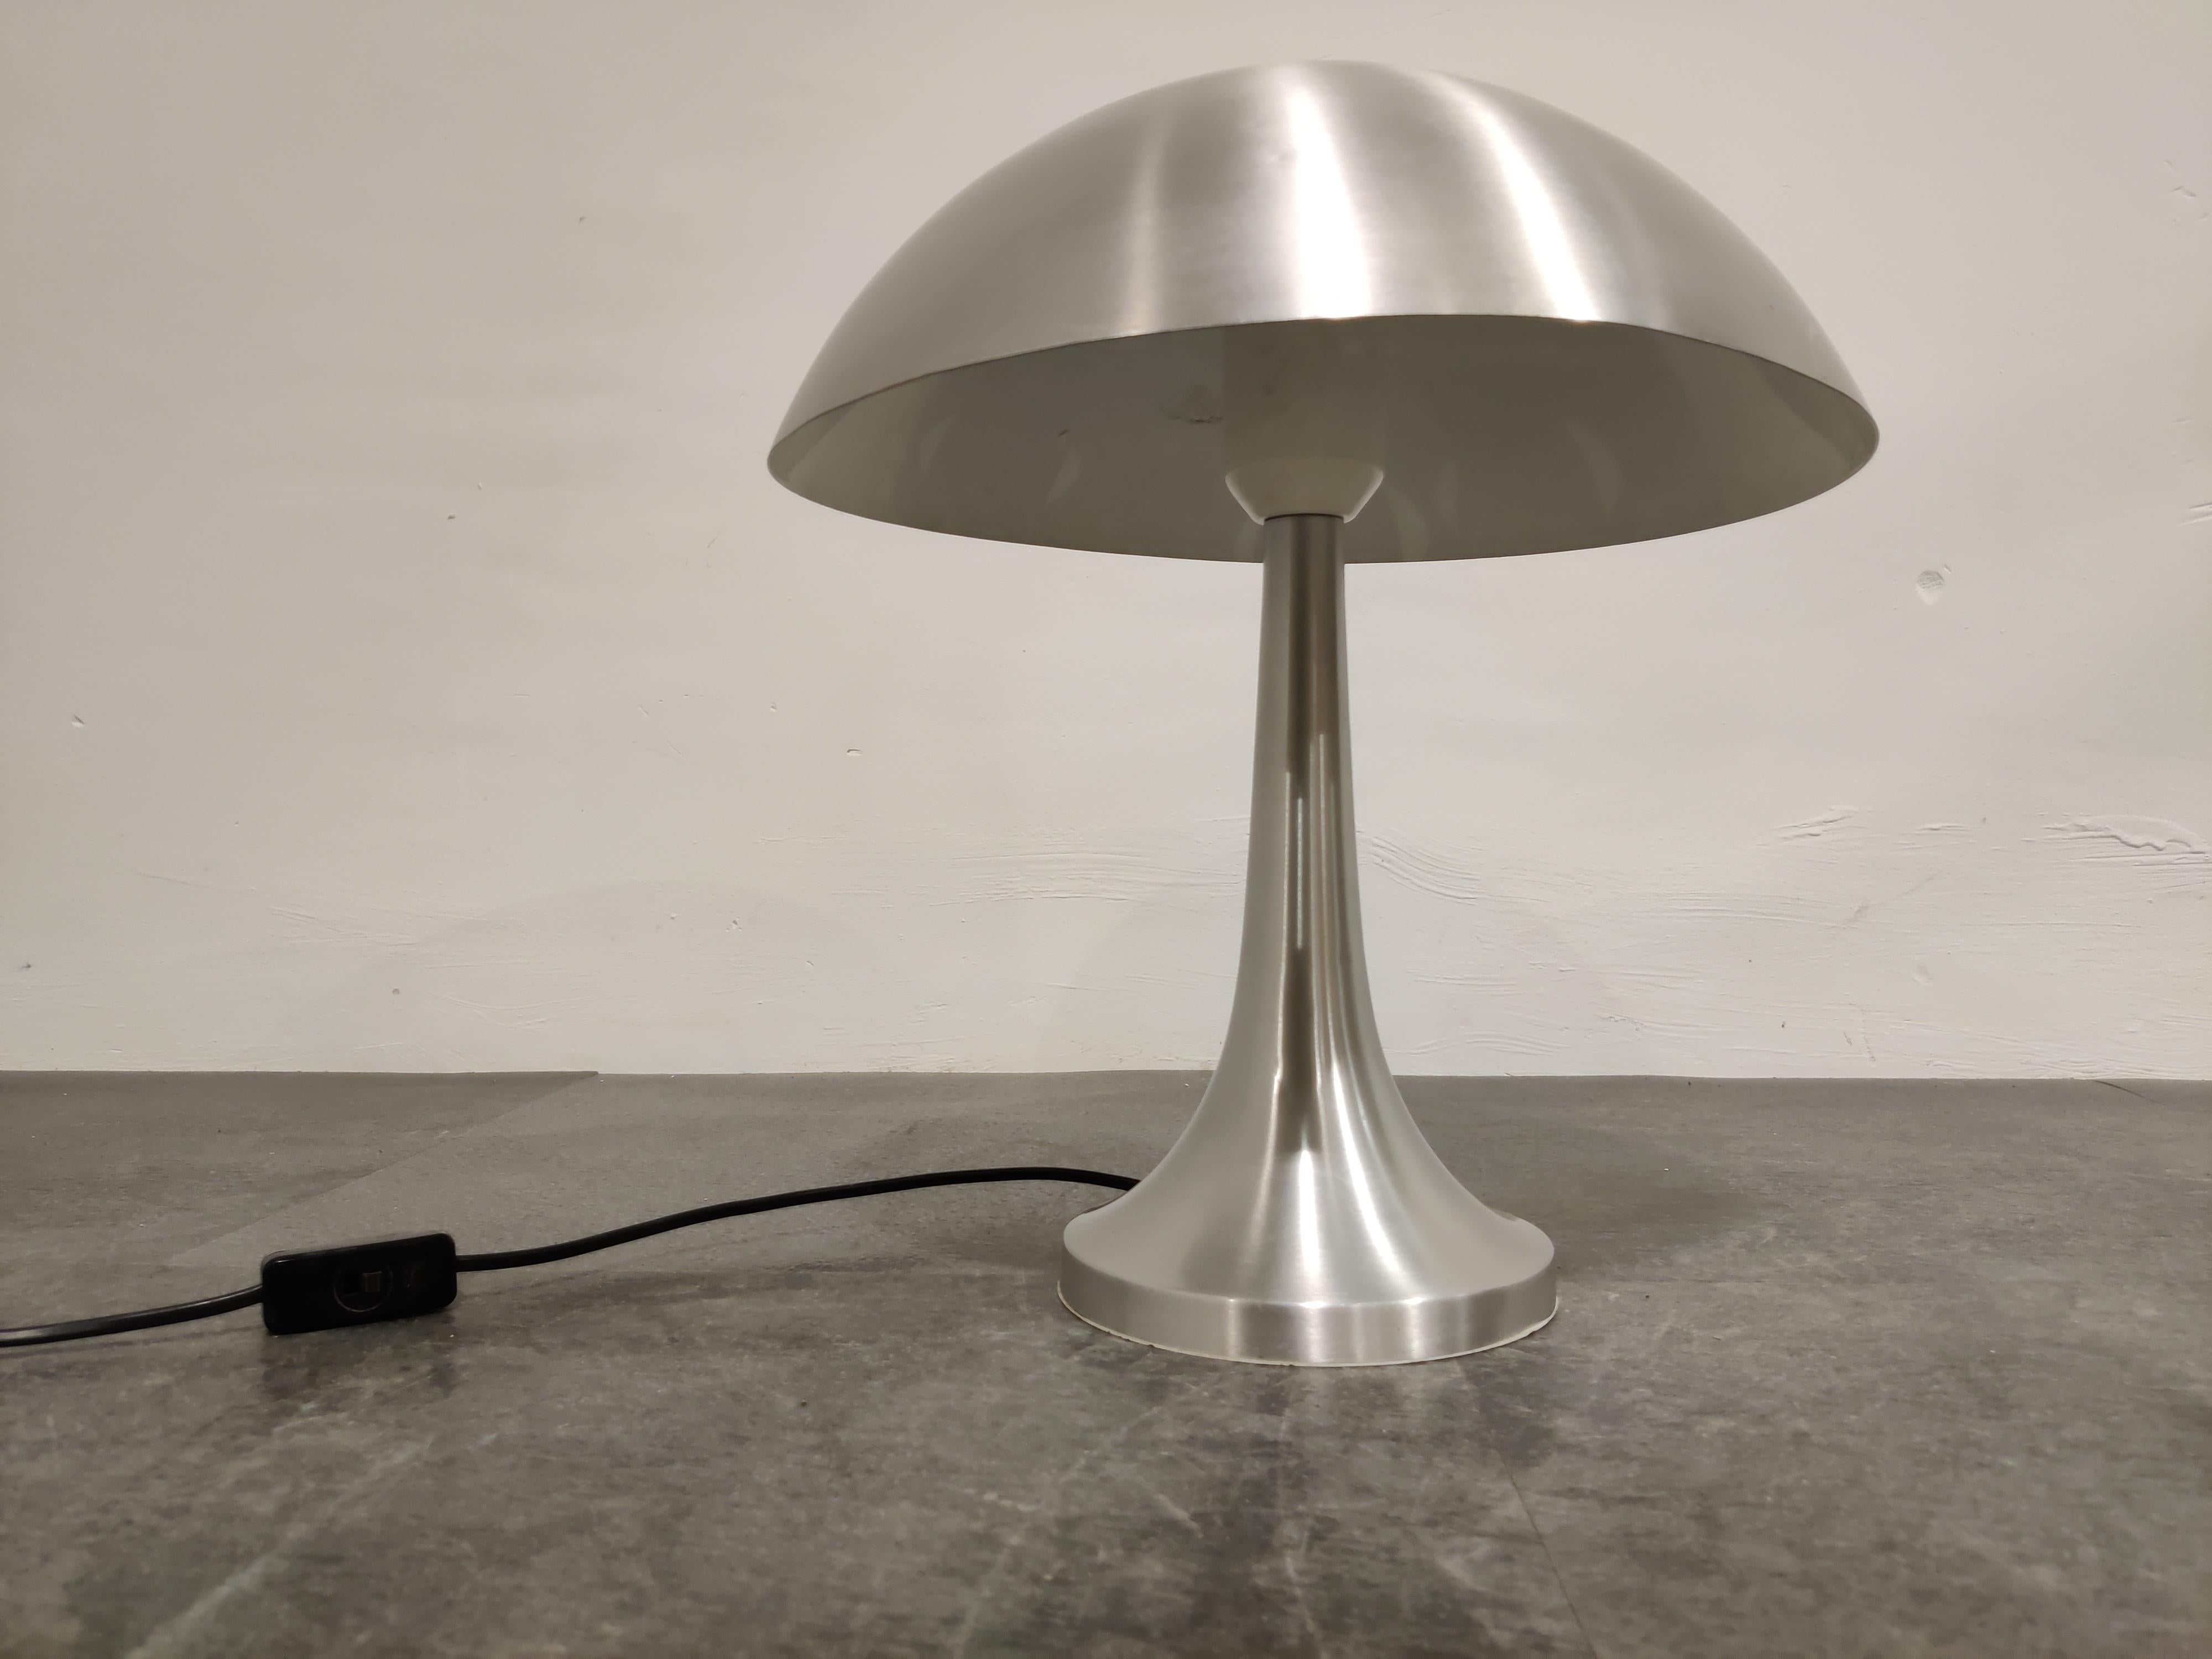 Vieille lampe de table champignon conçue par Louis Christiaan Kalff pour Philips.

La lampe a une belle forme et l'aluminium lui donne une touche spéciale.

Condition : Très petites bosses sur l'abat-jour et quelques rayures.

Testé et prêt à